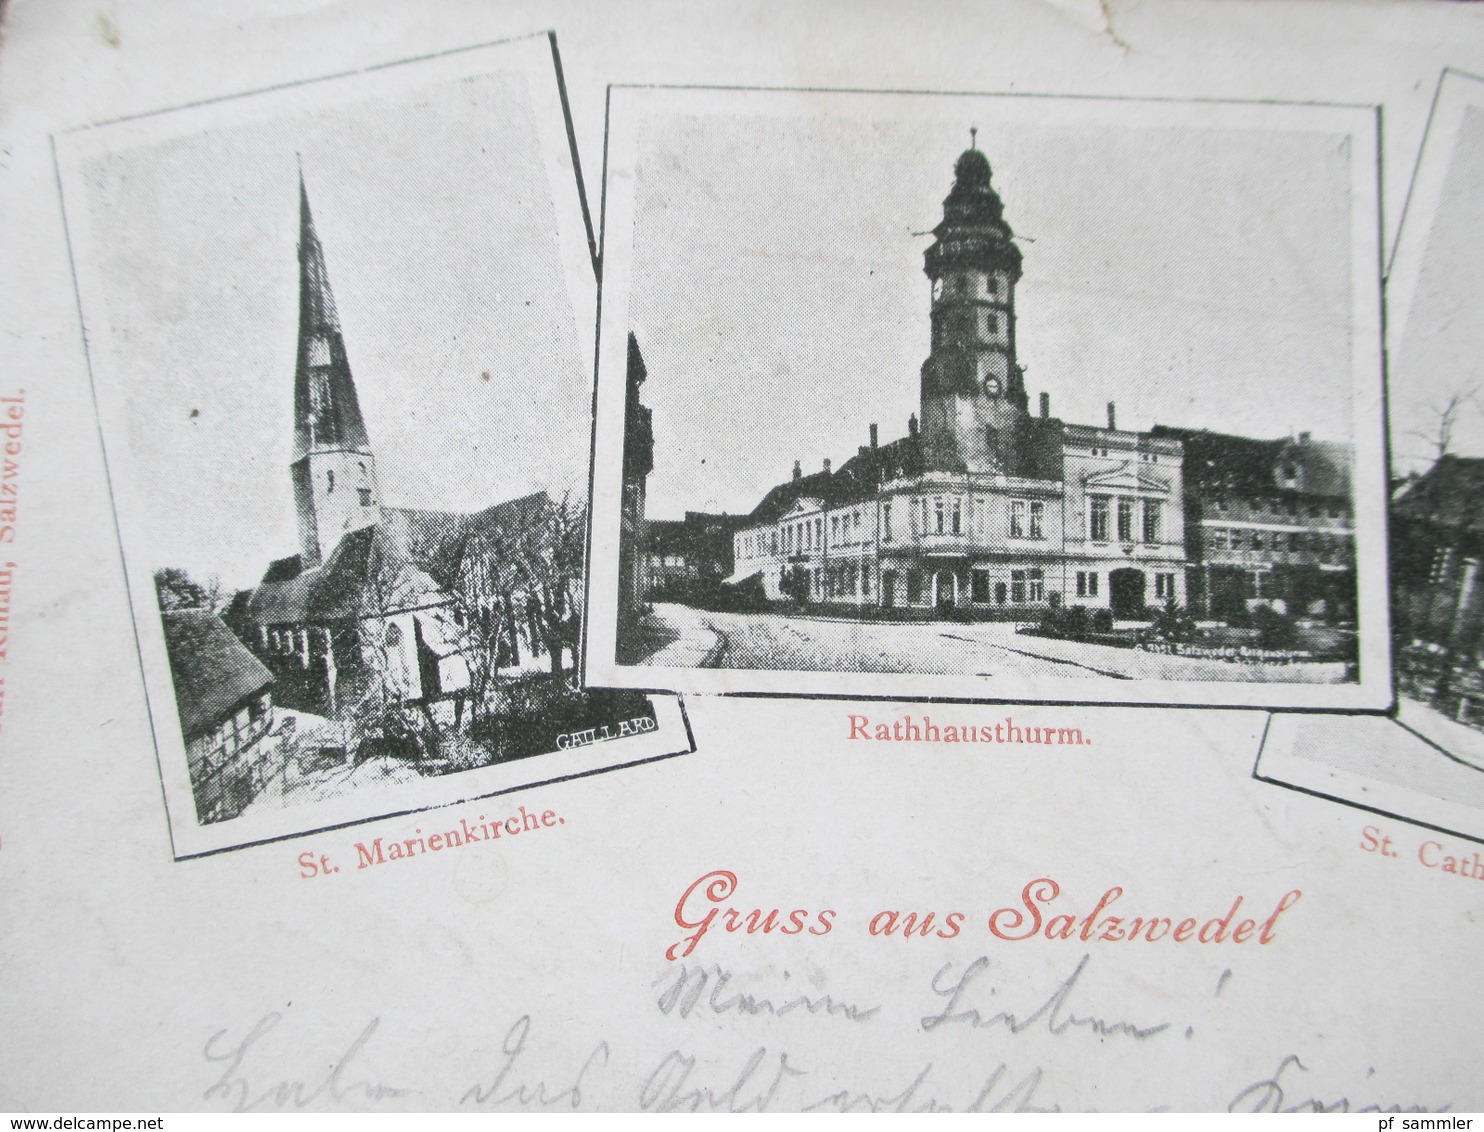 AK Mehrbildkarte Gruss Aus Salzwedel 1915 Verlag Von Carl Rinau, Salzwedel. St. Marienkirche / St. Catharinenkirche - Salzwedel